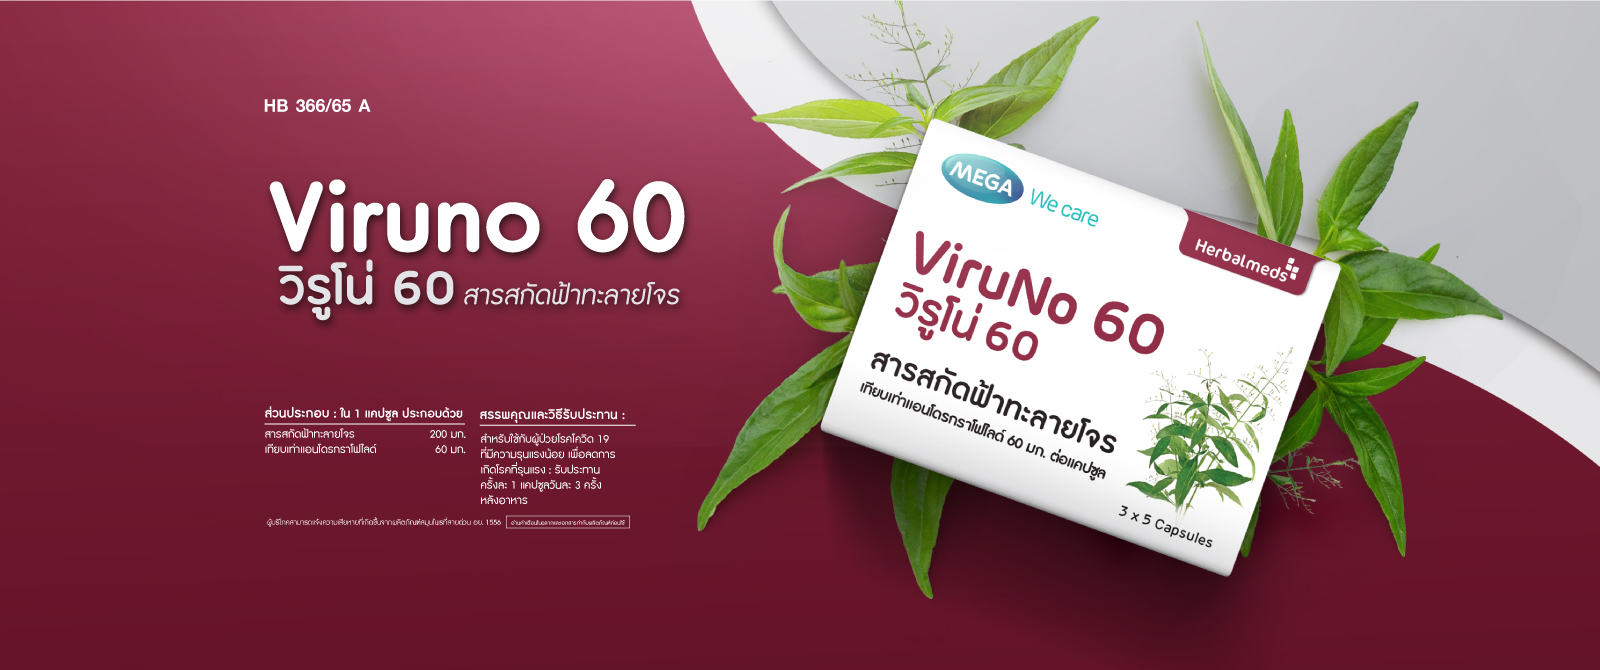 Banner-Viruno-60